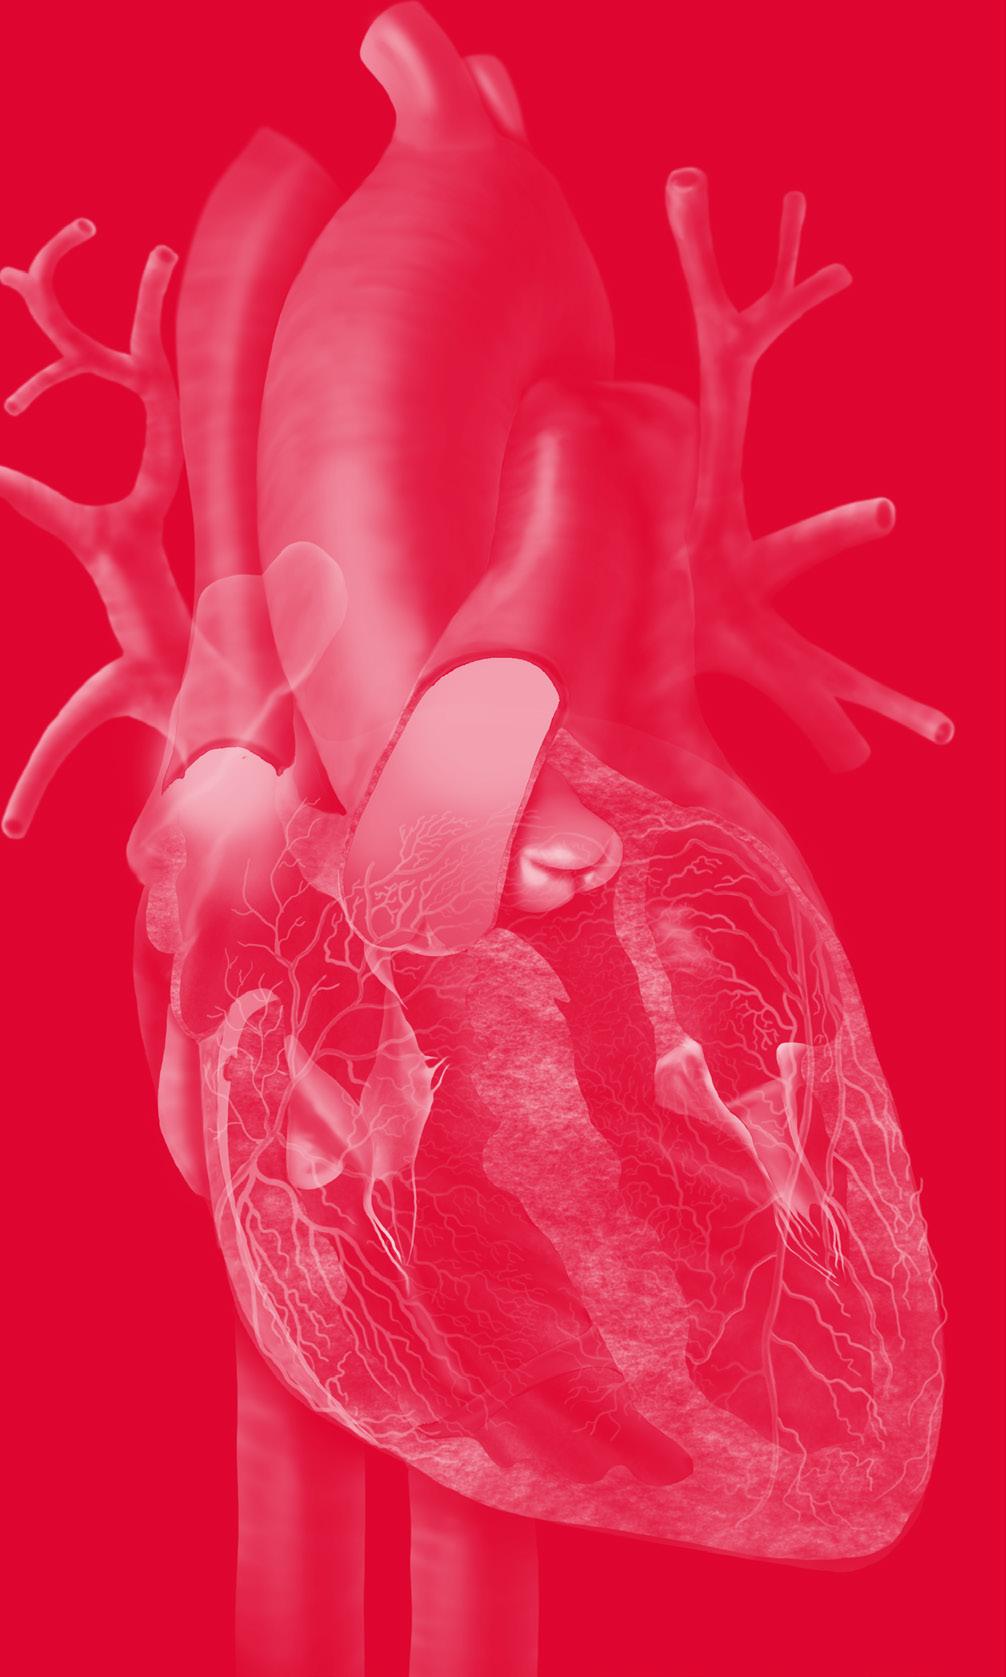 Este e-book traz, com detalhes, o atendimento da parada cardiorrespiratória (PCR) no adulto segundo as últimas diretrizes (2015) da American Heart Association.